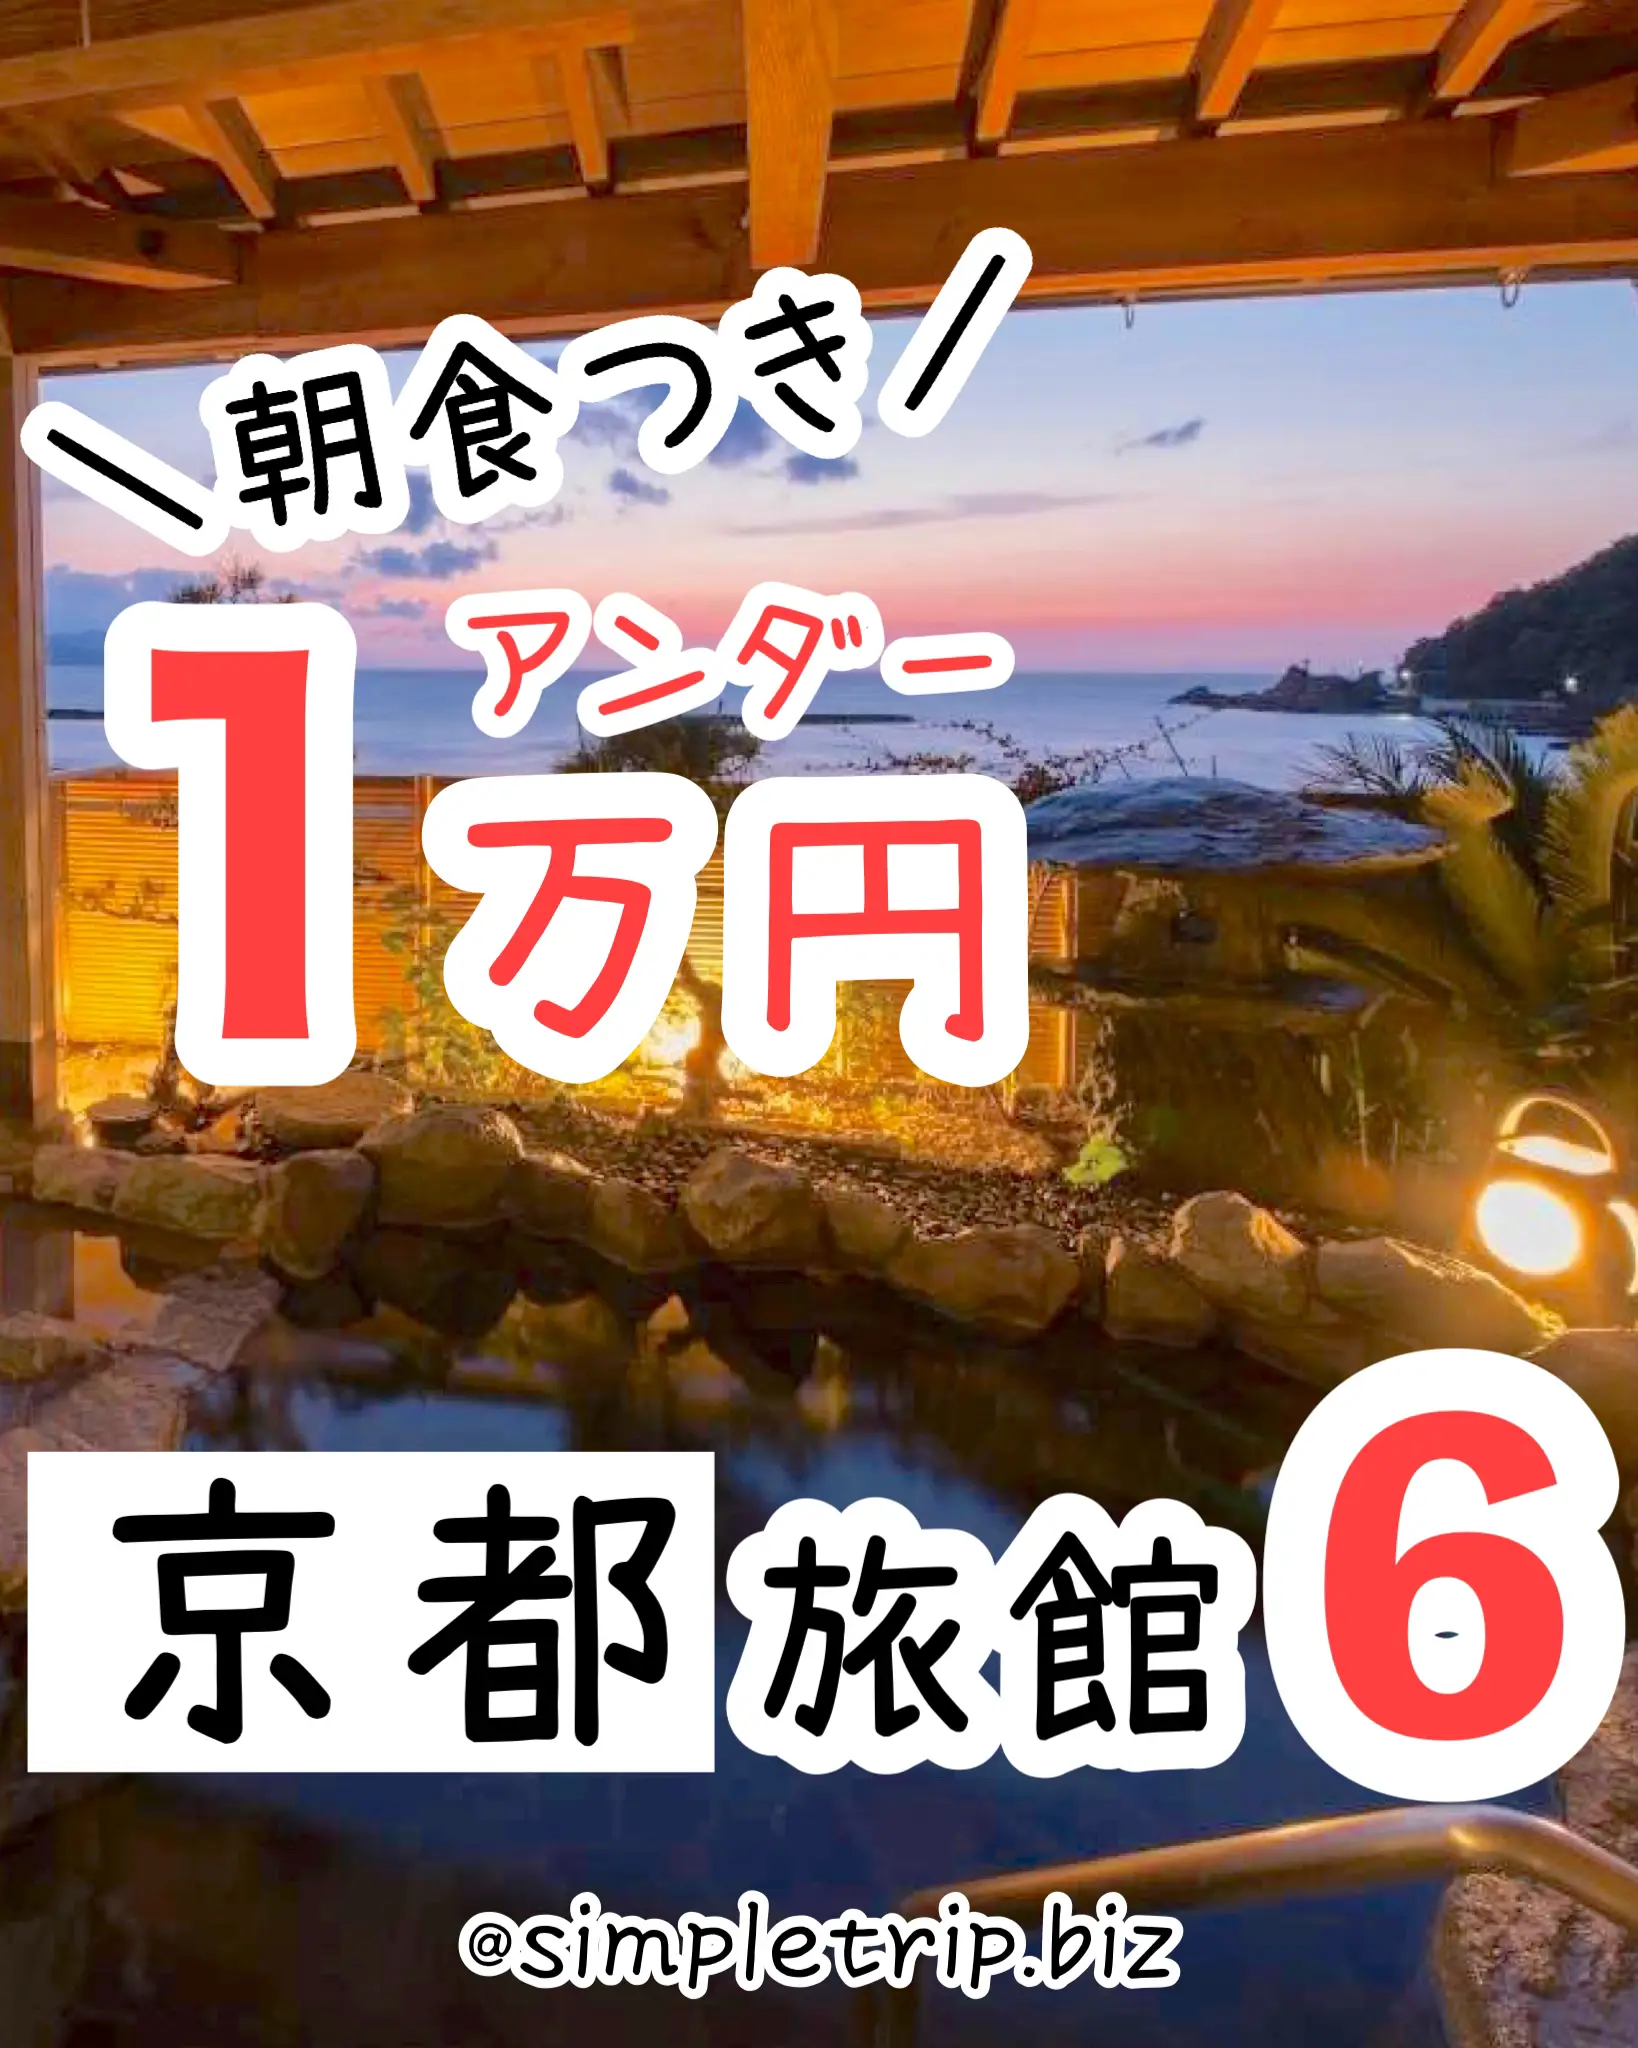 関西温泉旅館 ランキング - Lemon8検索